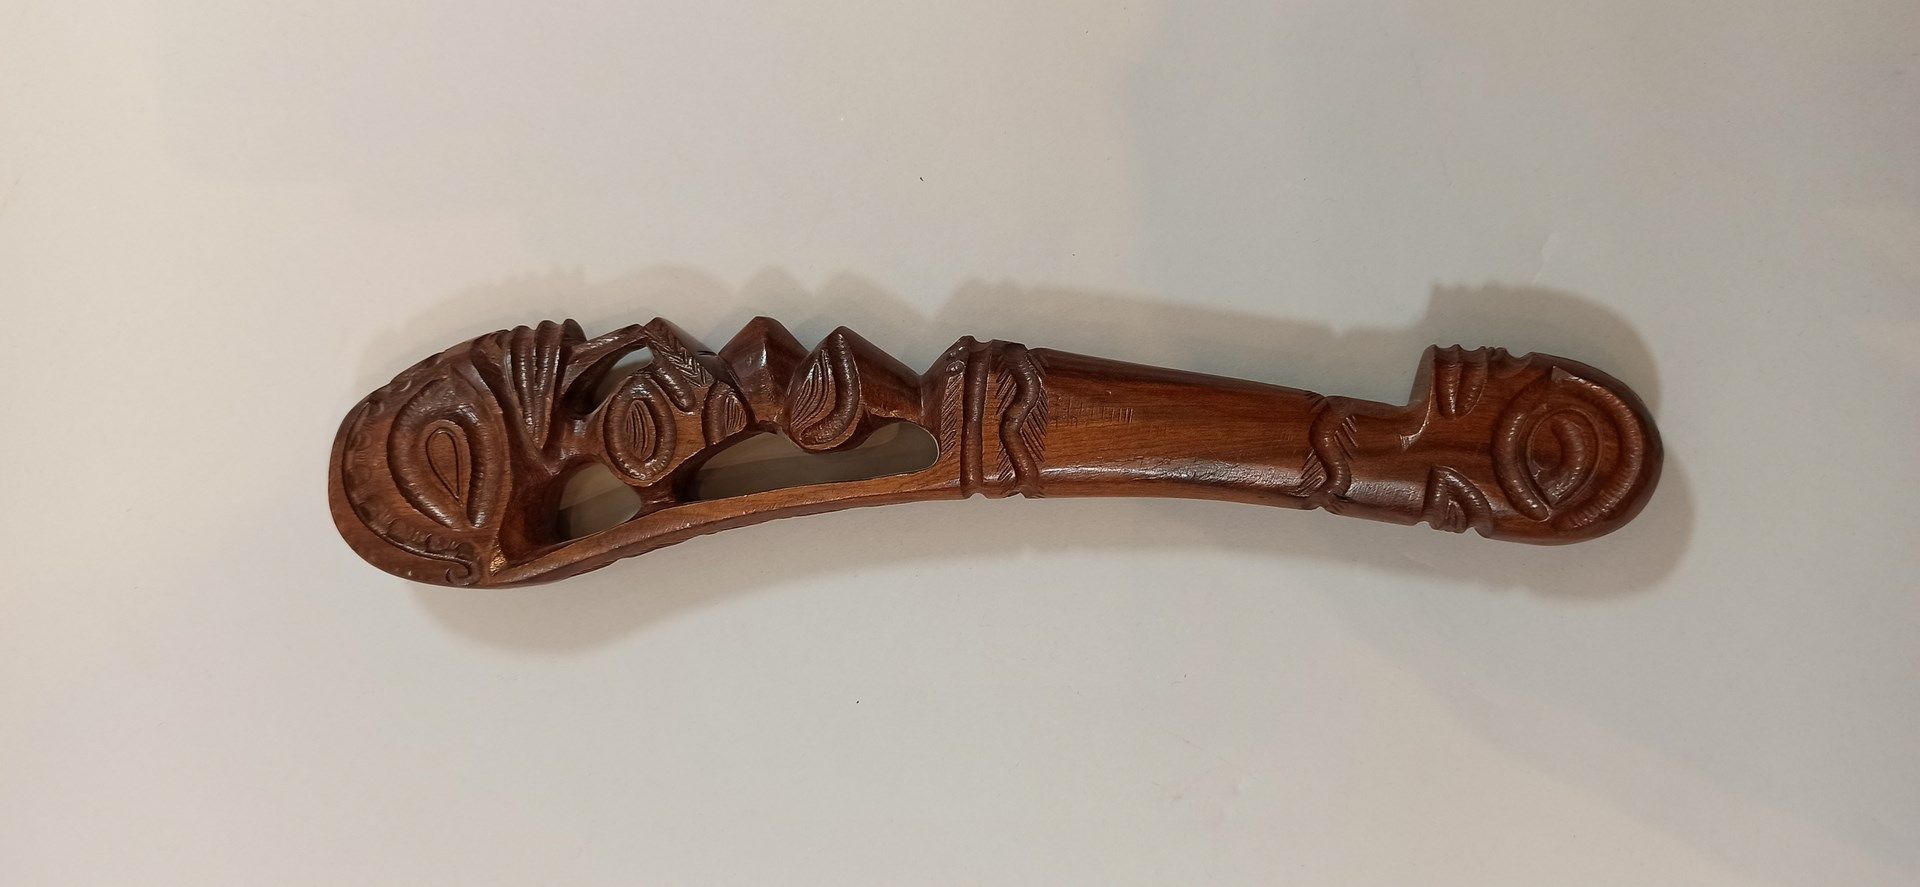 Null 地段。

- 英式警棍，佩戴

长度： 27 cm

- 现代斐济的接力棒。

长度：34厘米